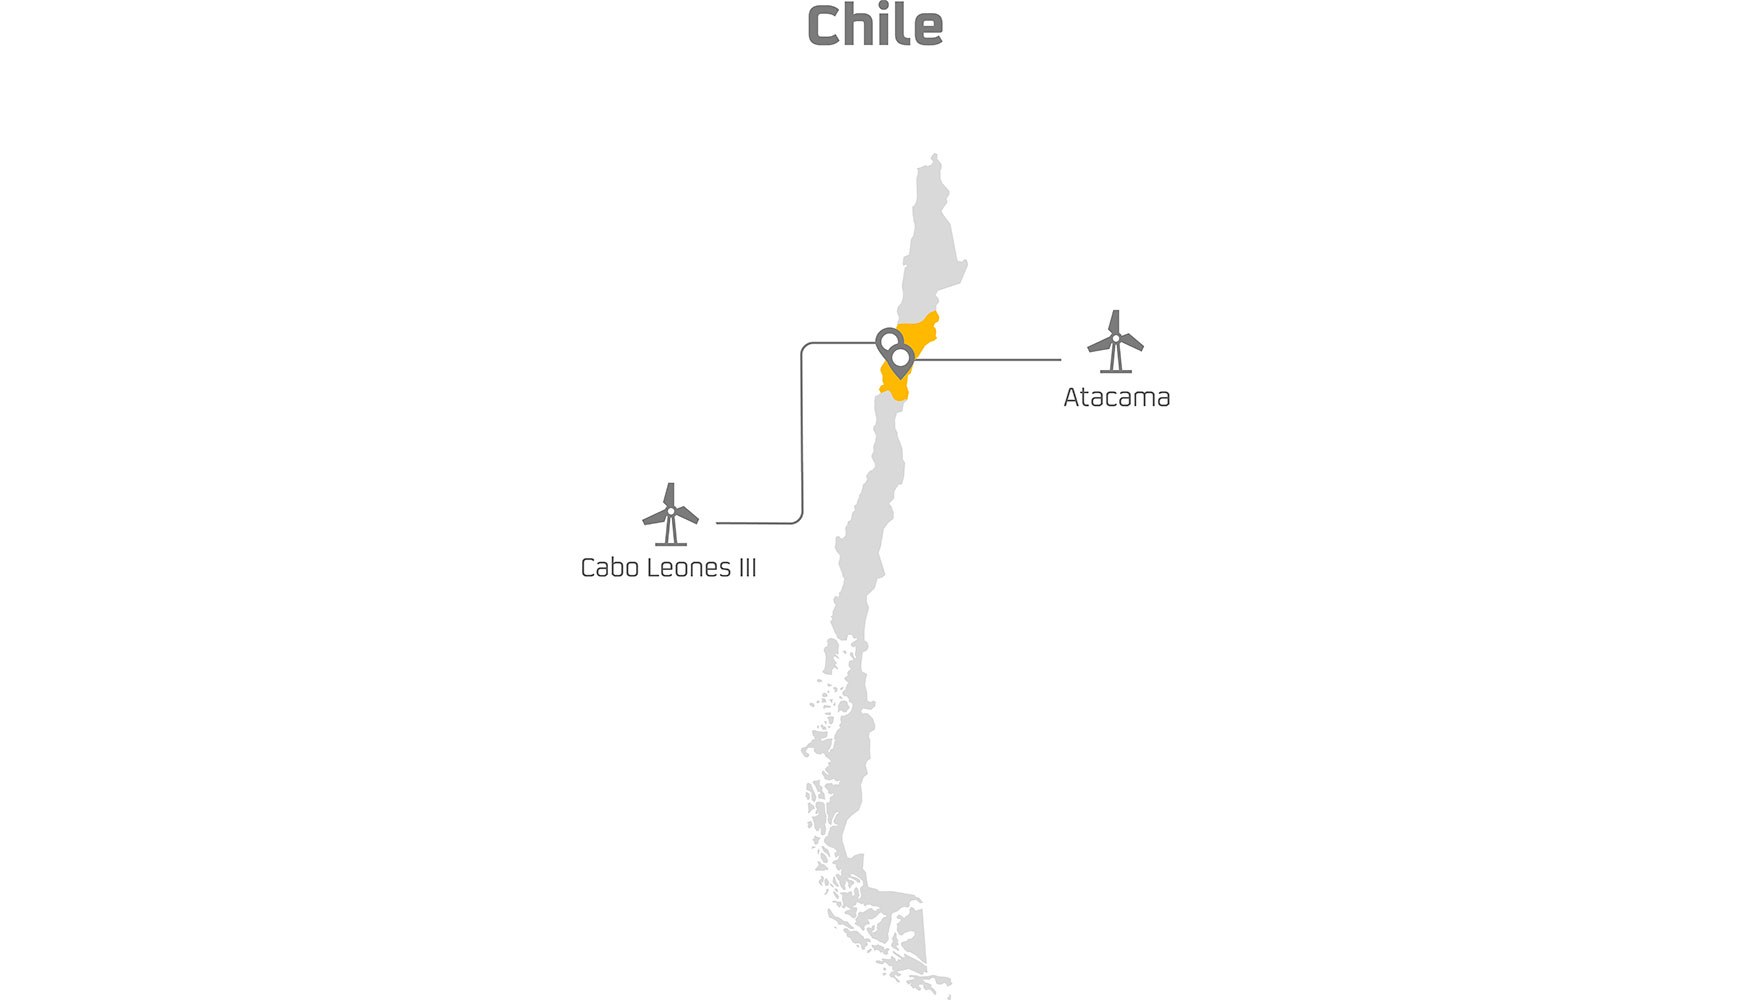 La joint venture desarrollar en Chile, en el periodo que va hasta 2023, adems de Cabo Leones III, el proyecto elico Atacama...